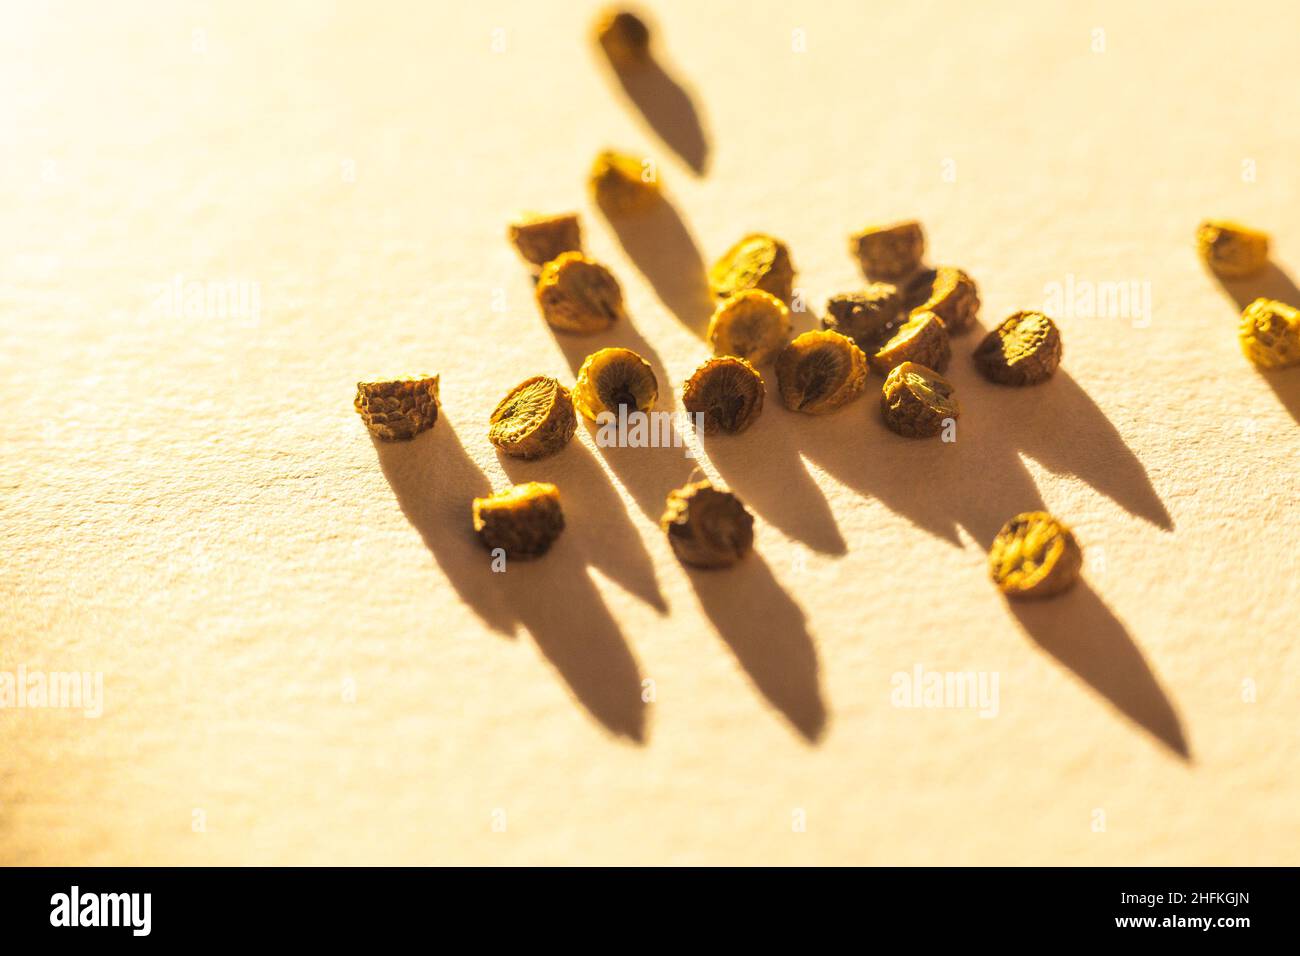 Malva sylvestris var. mauritiana 'Zebrina' seeds close up Stock Photo